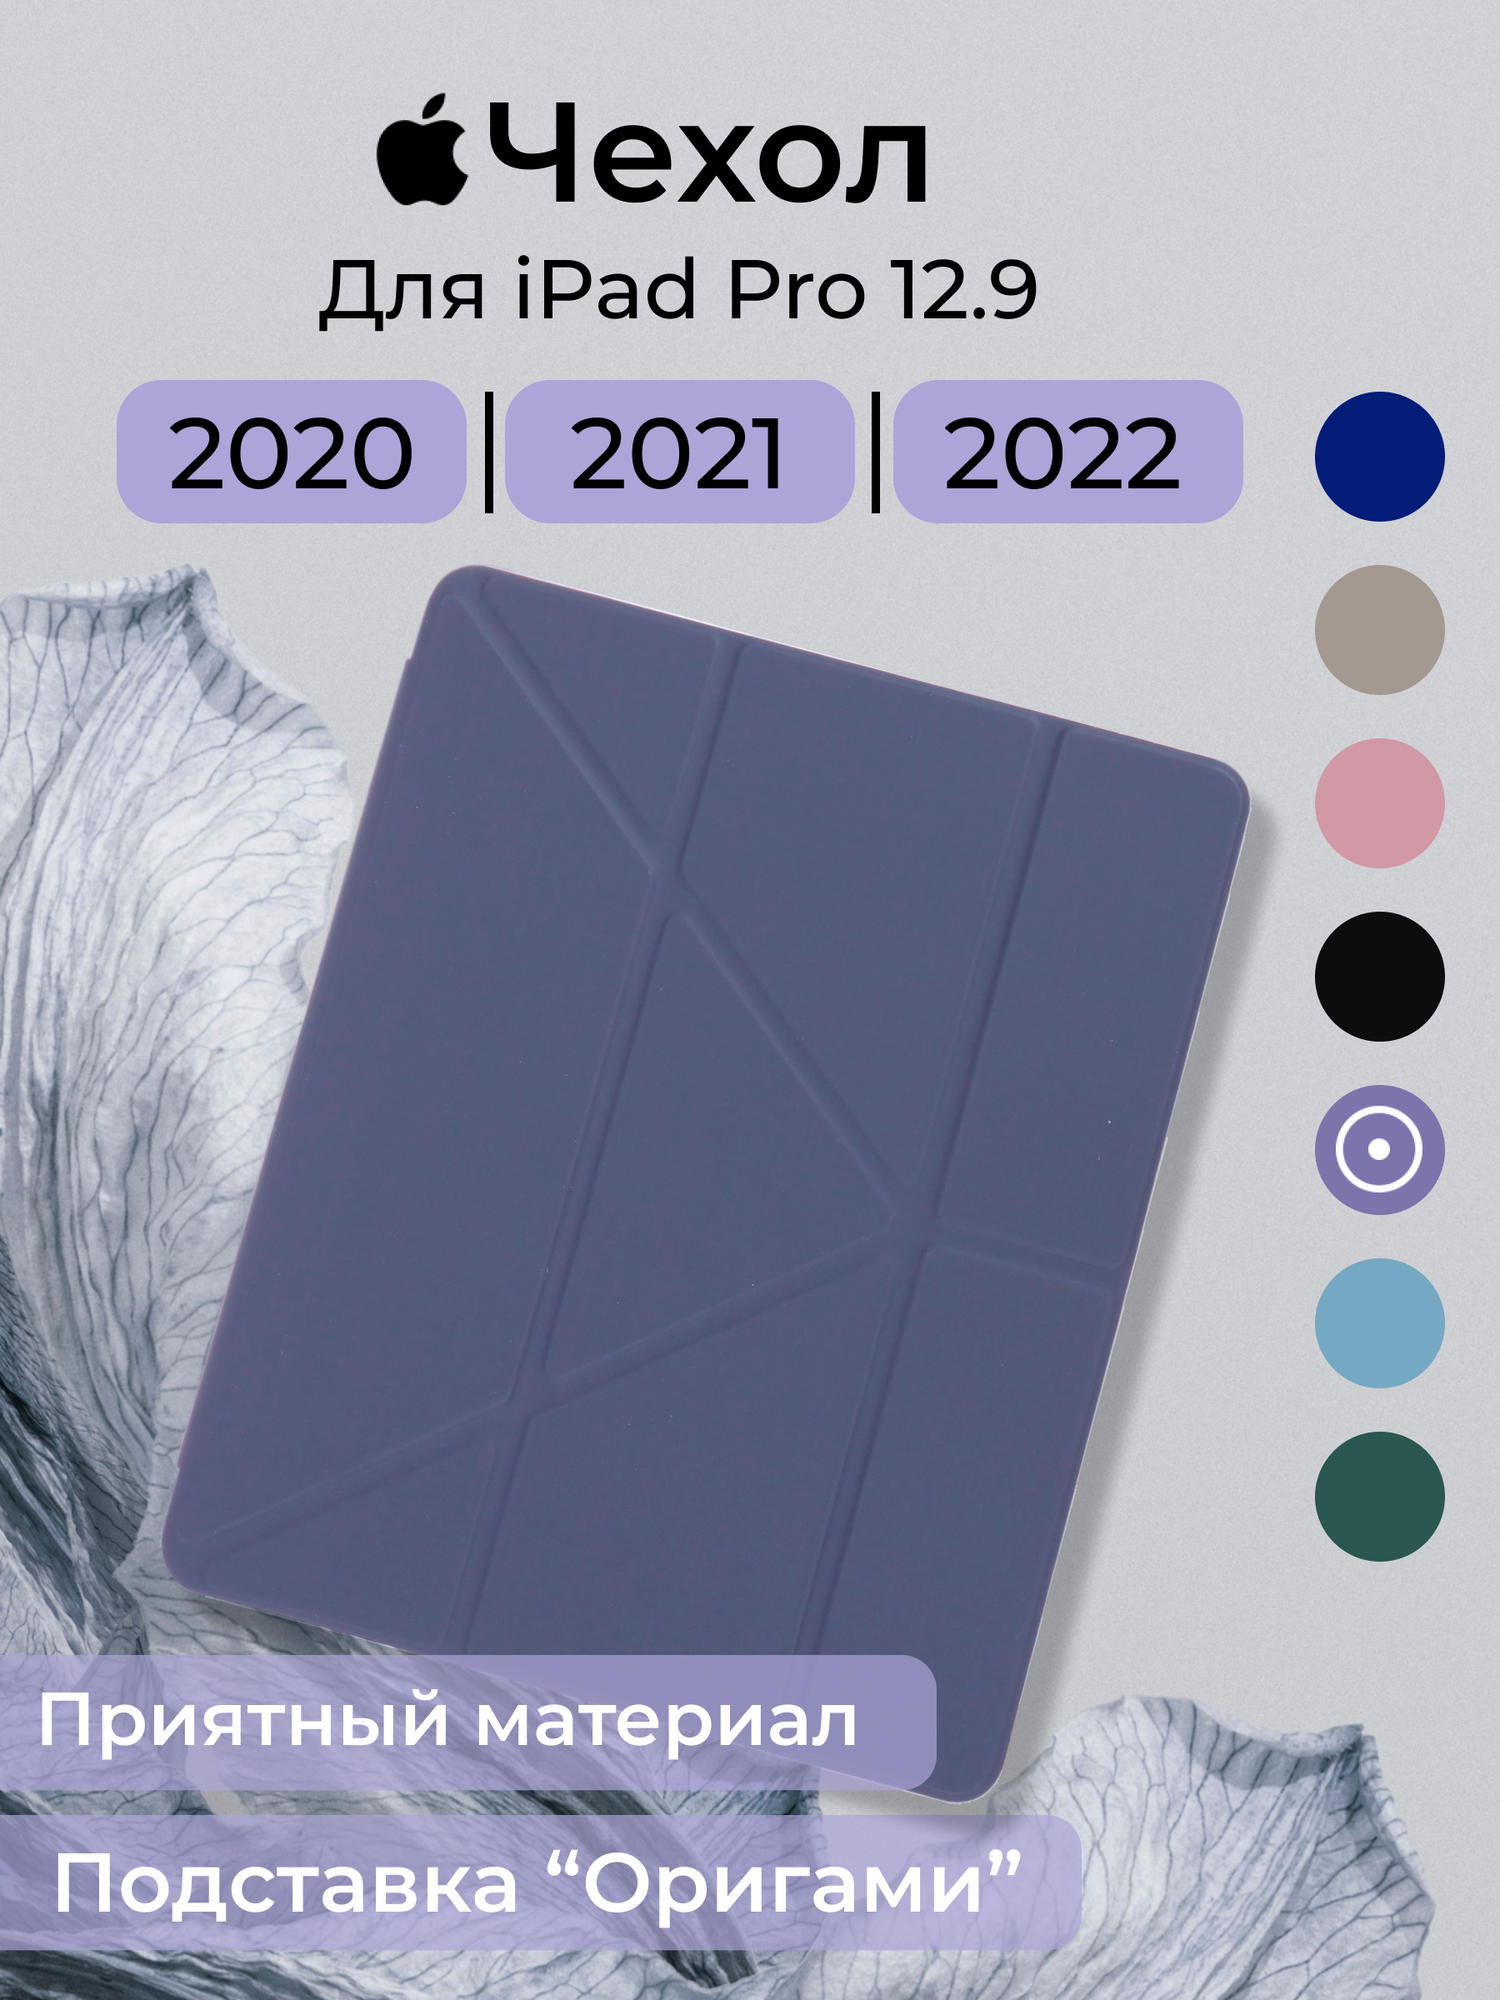 Чехол для IPAD PRO 12.9 2020, 2021, 2022 оригами